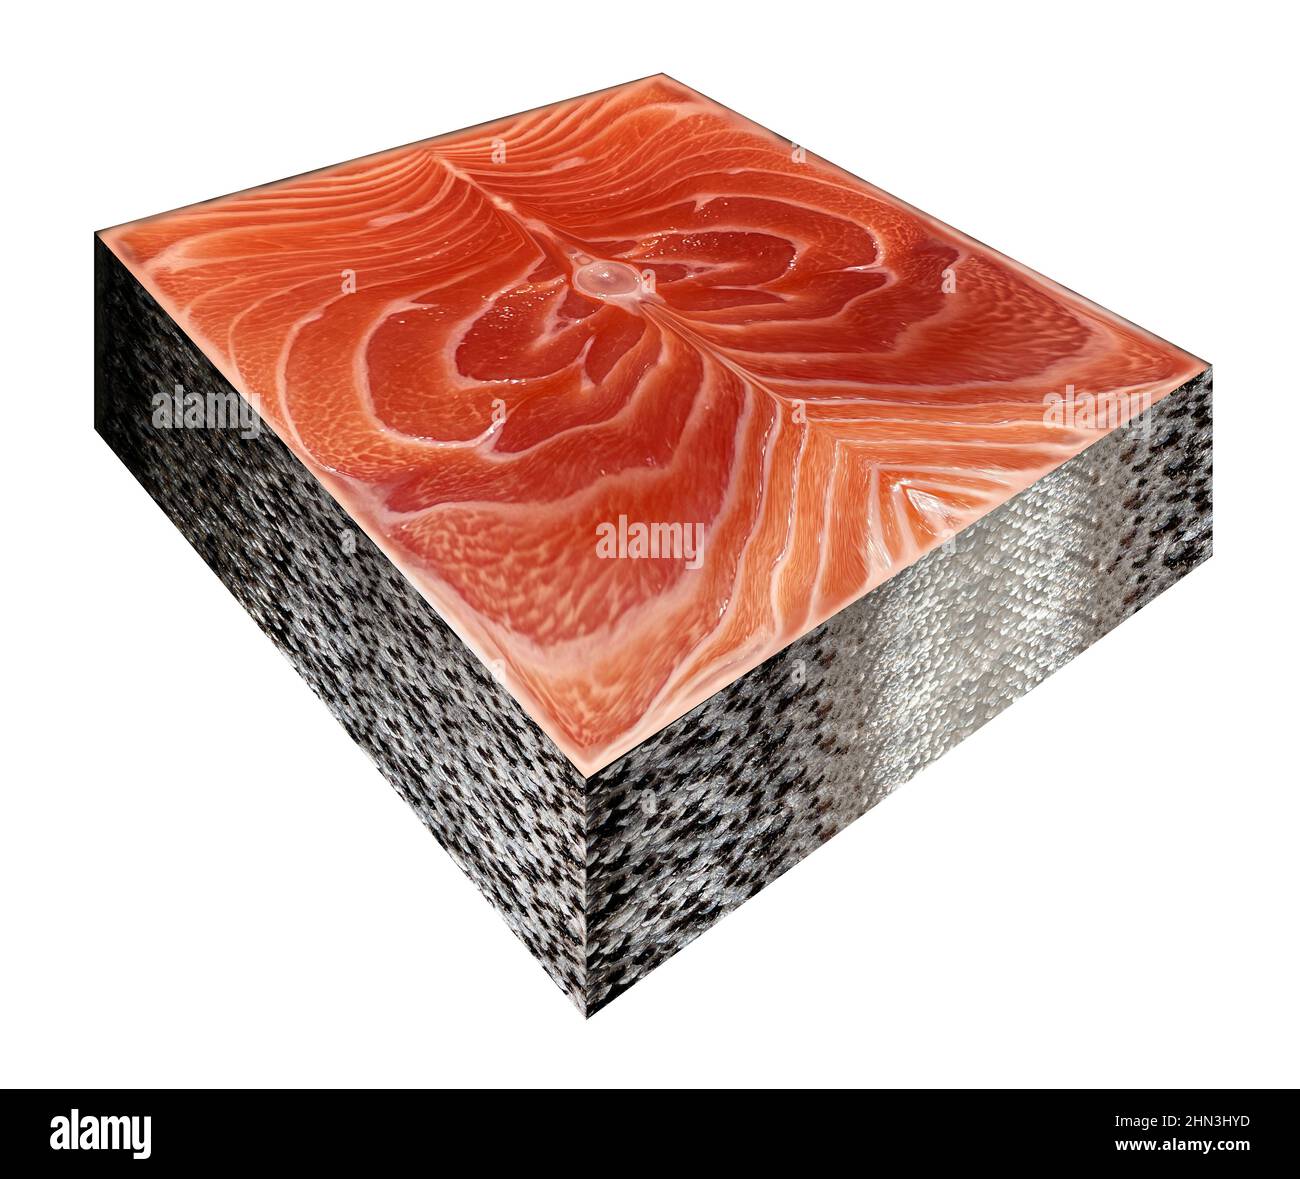 Simbolo degli alimenti trasformati e alimenti geneticamente modificati o pesce OGM come bistecca di salmone dell'Atlantico a forma di cubo sintetico. Foto Stock